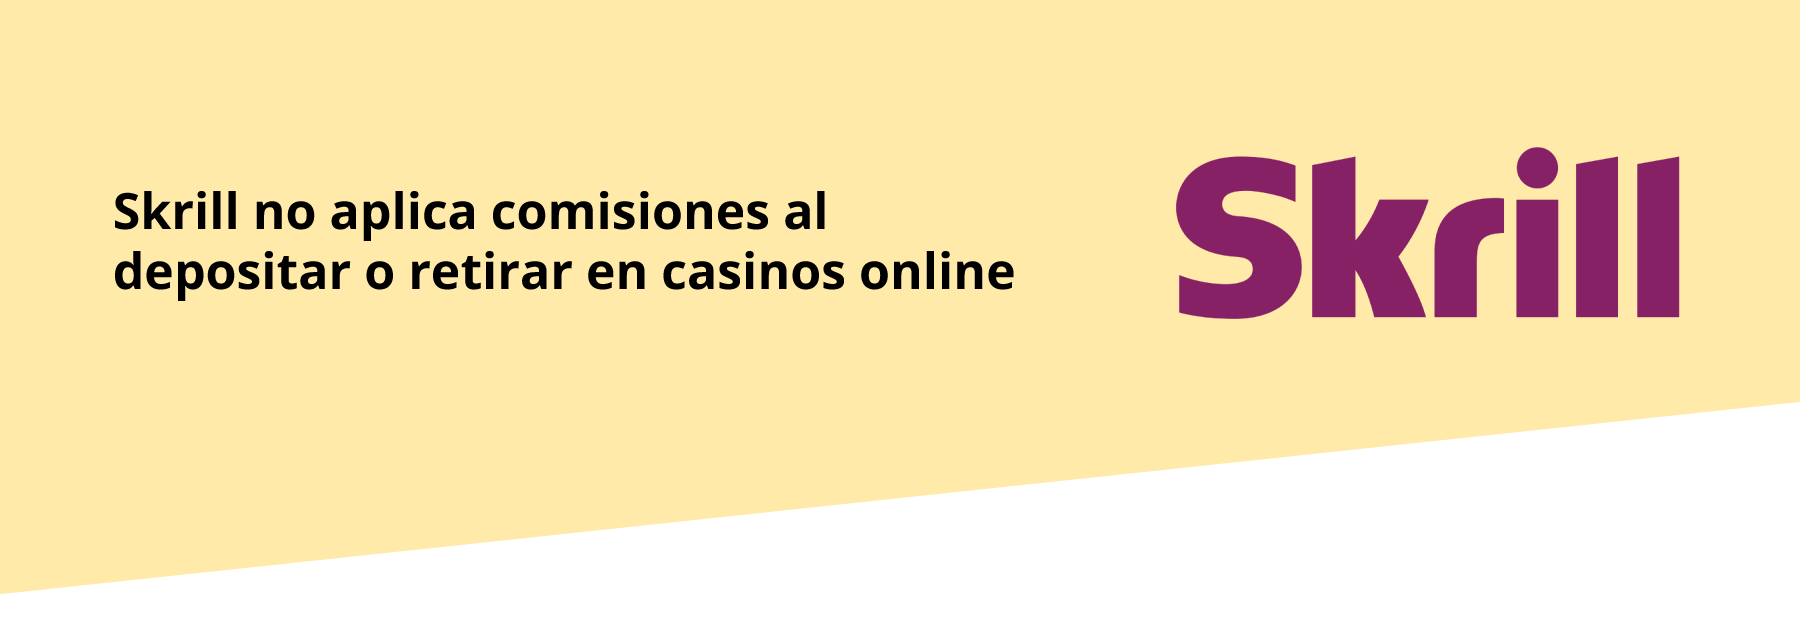 Skrill en casinos online